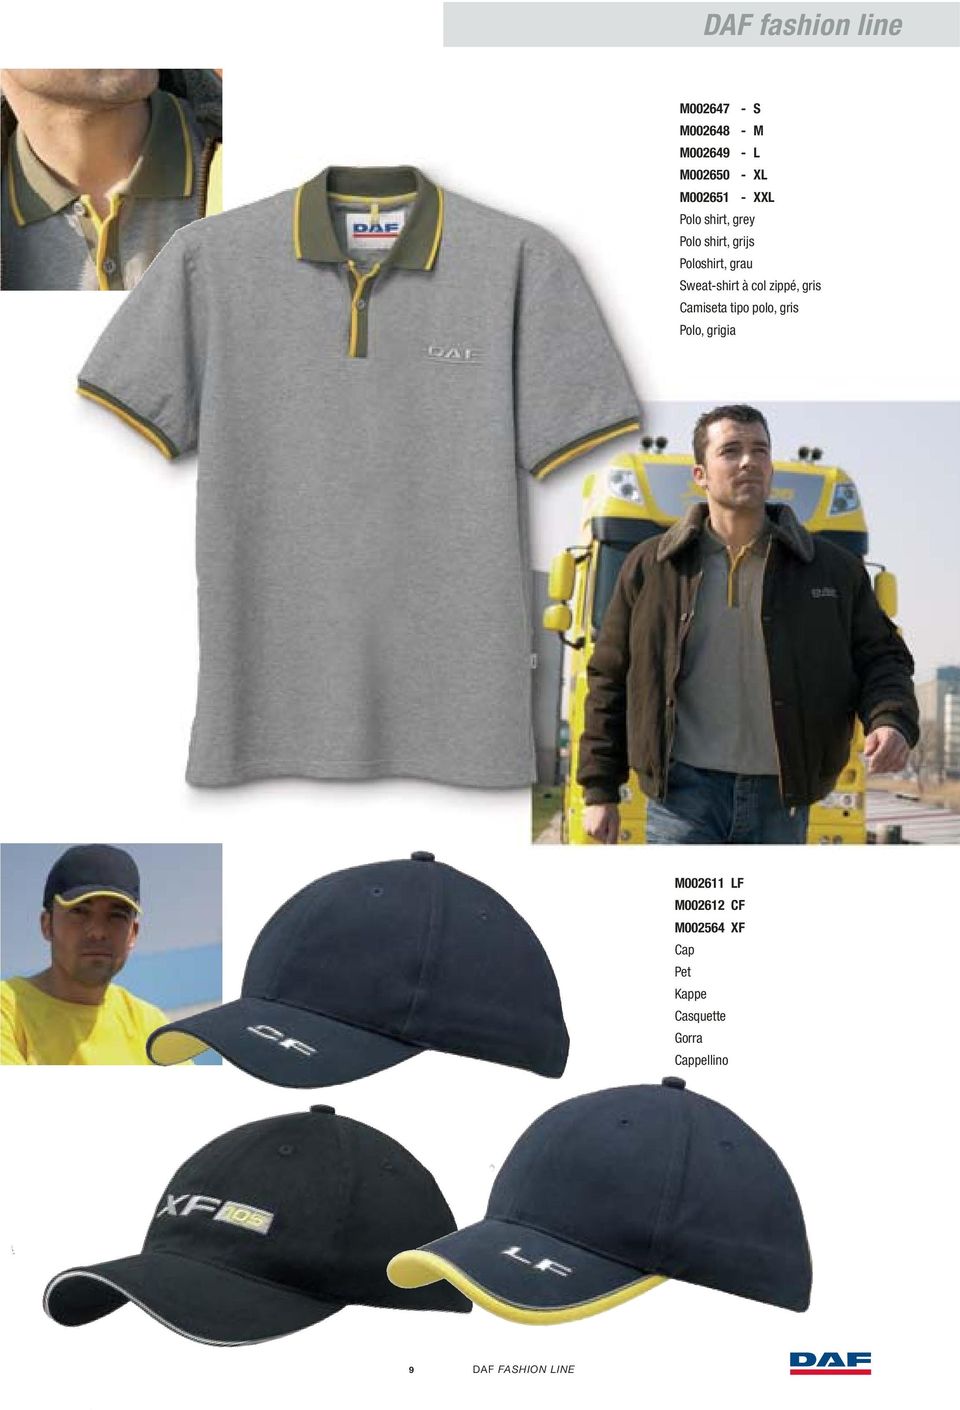 Sweat-shirt à col zippé, gris Camiseta tipo polo, gris Polo, grigia